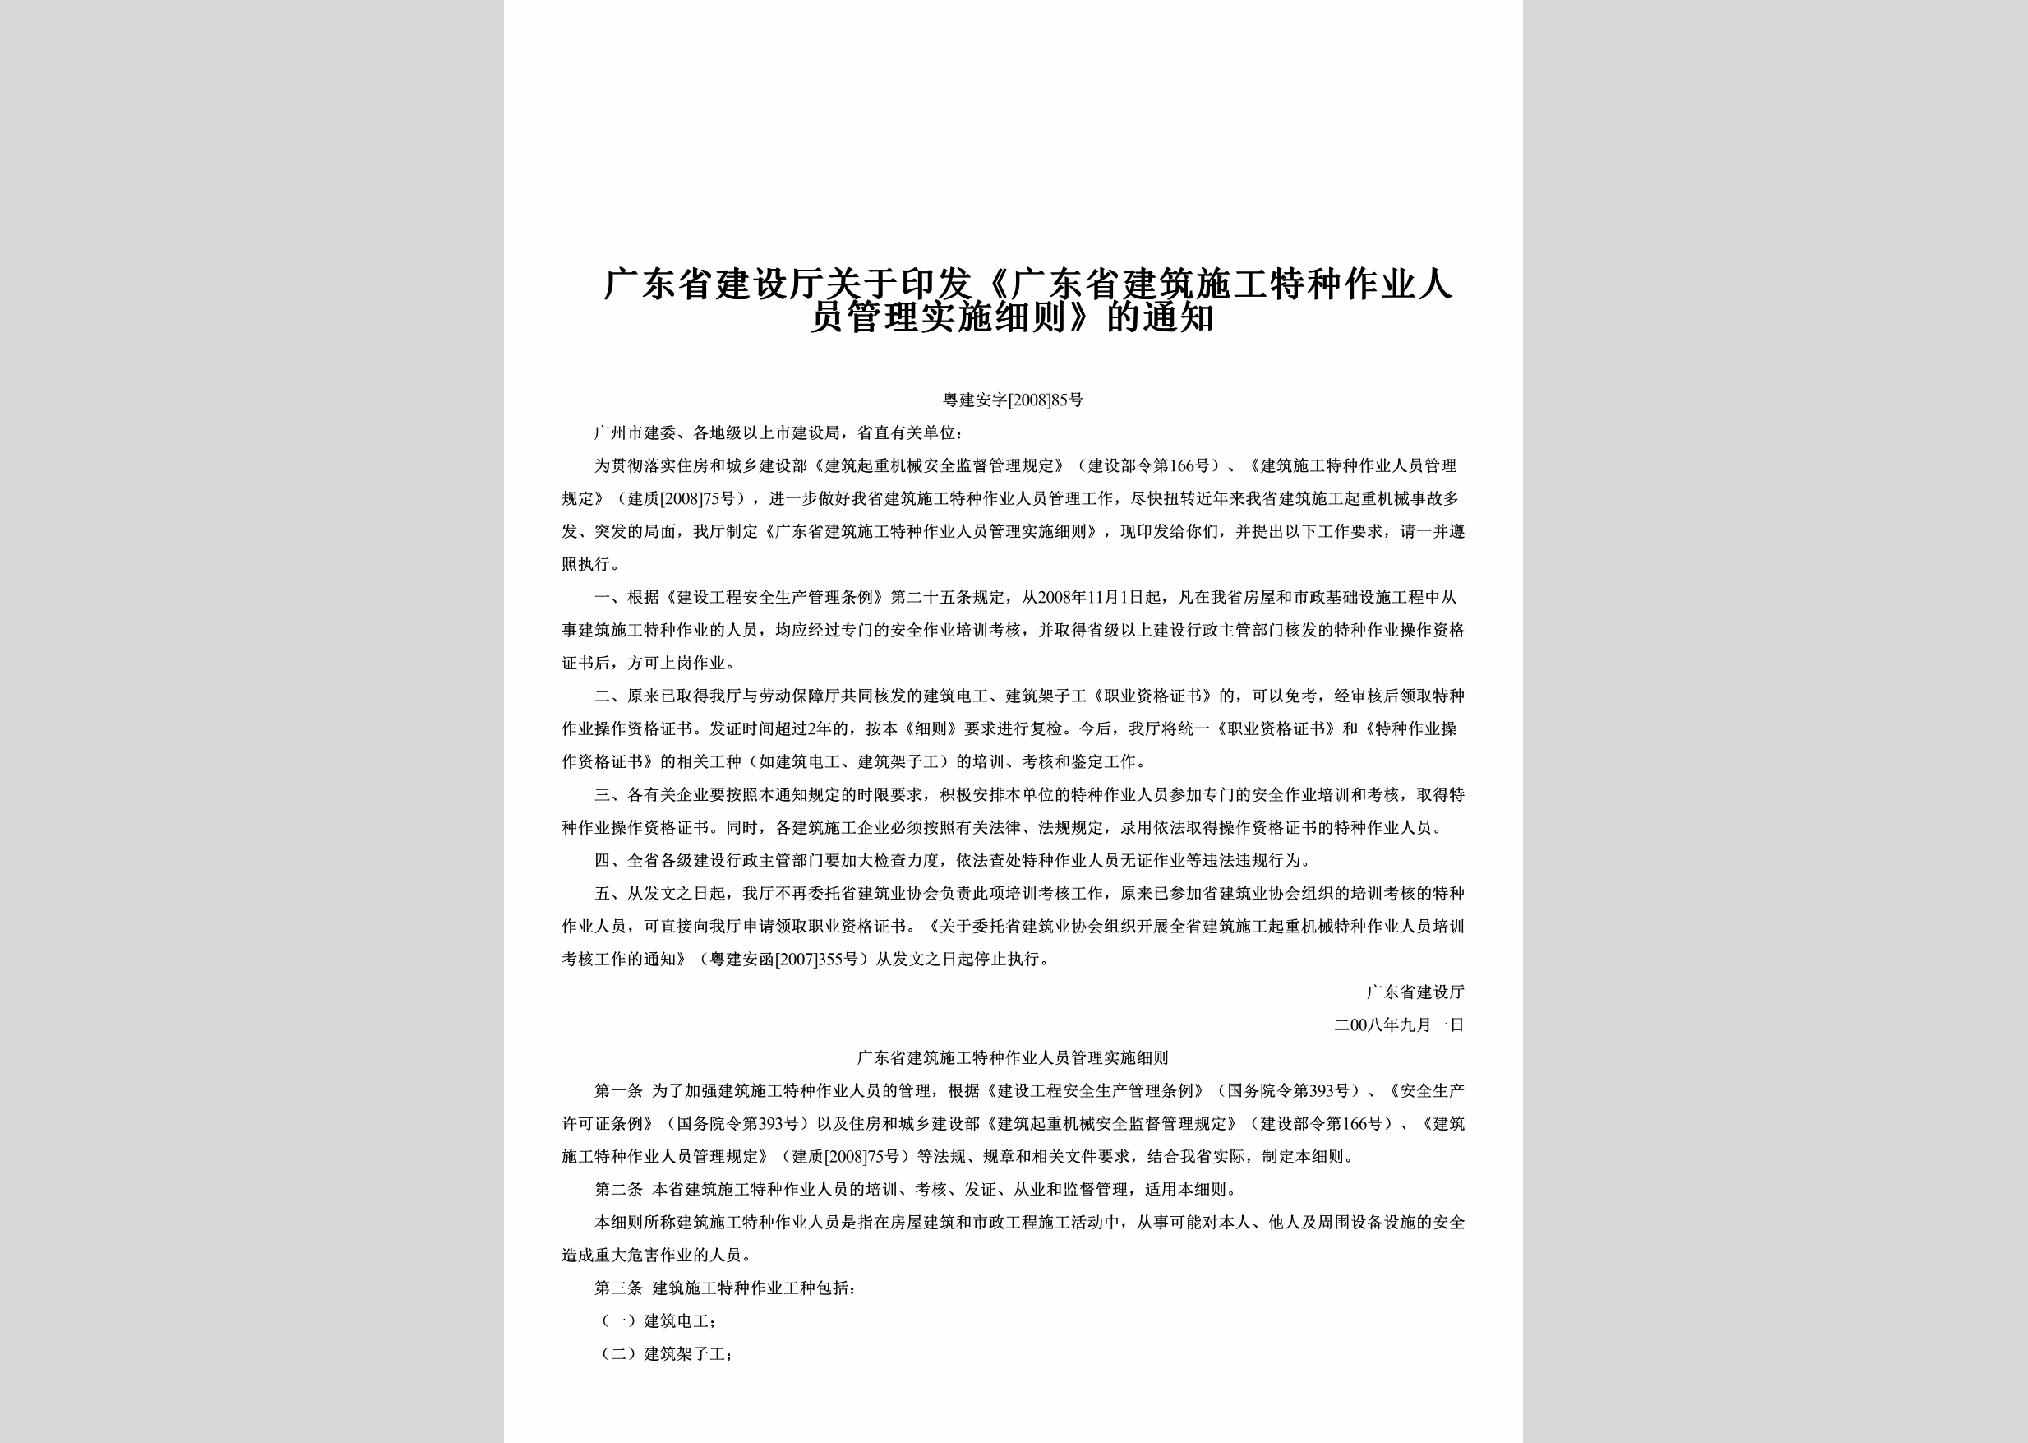 粤建安字[2008]85号：关于印发《广东省建筑施工特种作业人员管理实施细则》的通知